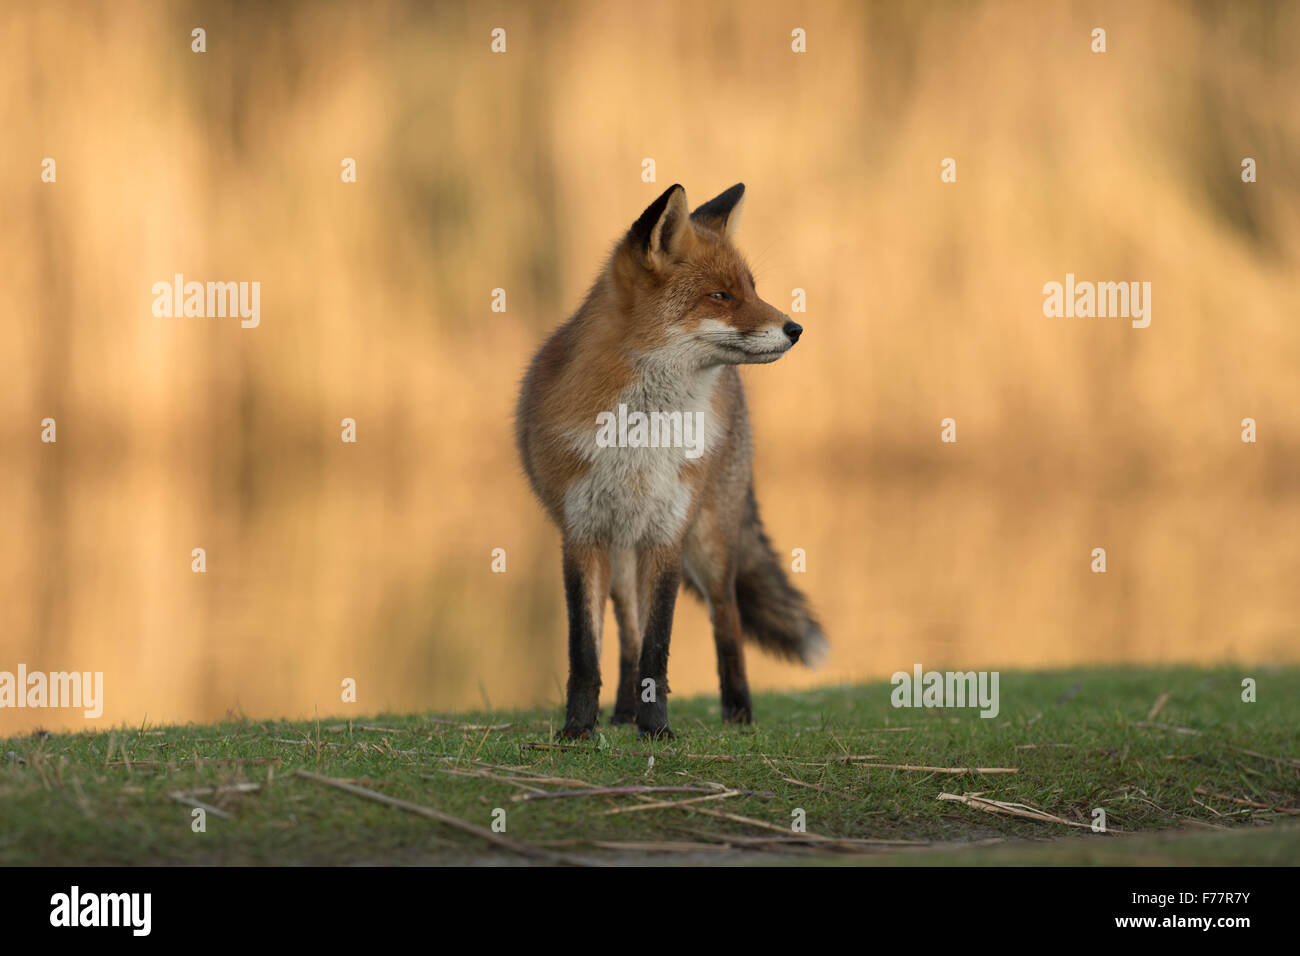 Red Fox ( Vulpes vulpes ) si guarda intorno, sorge su una striscia ripariale lungo un tratto di acqua, luminoso e brillante reed in background. Foto Stock